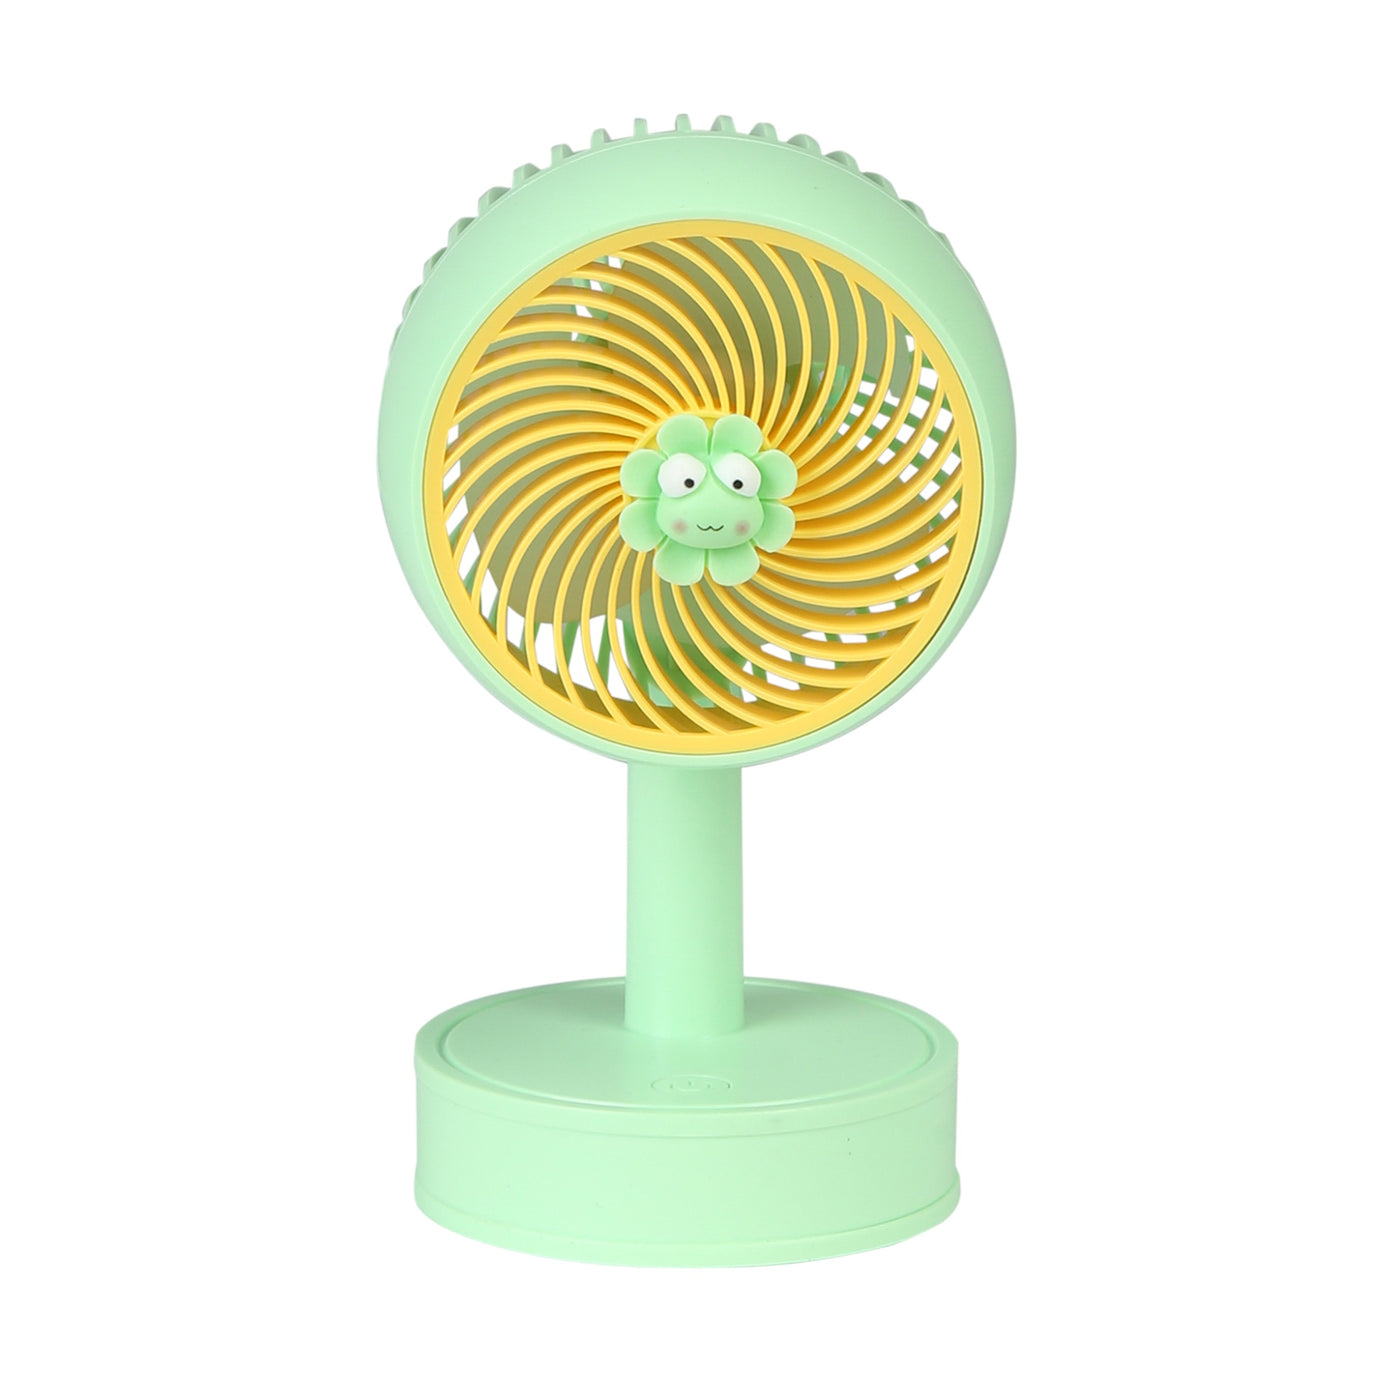 Cute Breeze Handheld Electric Fan